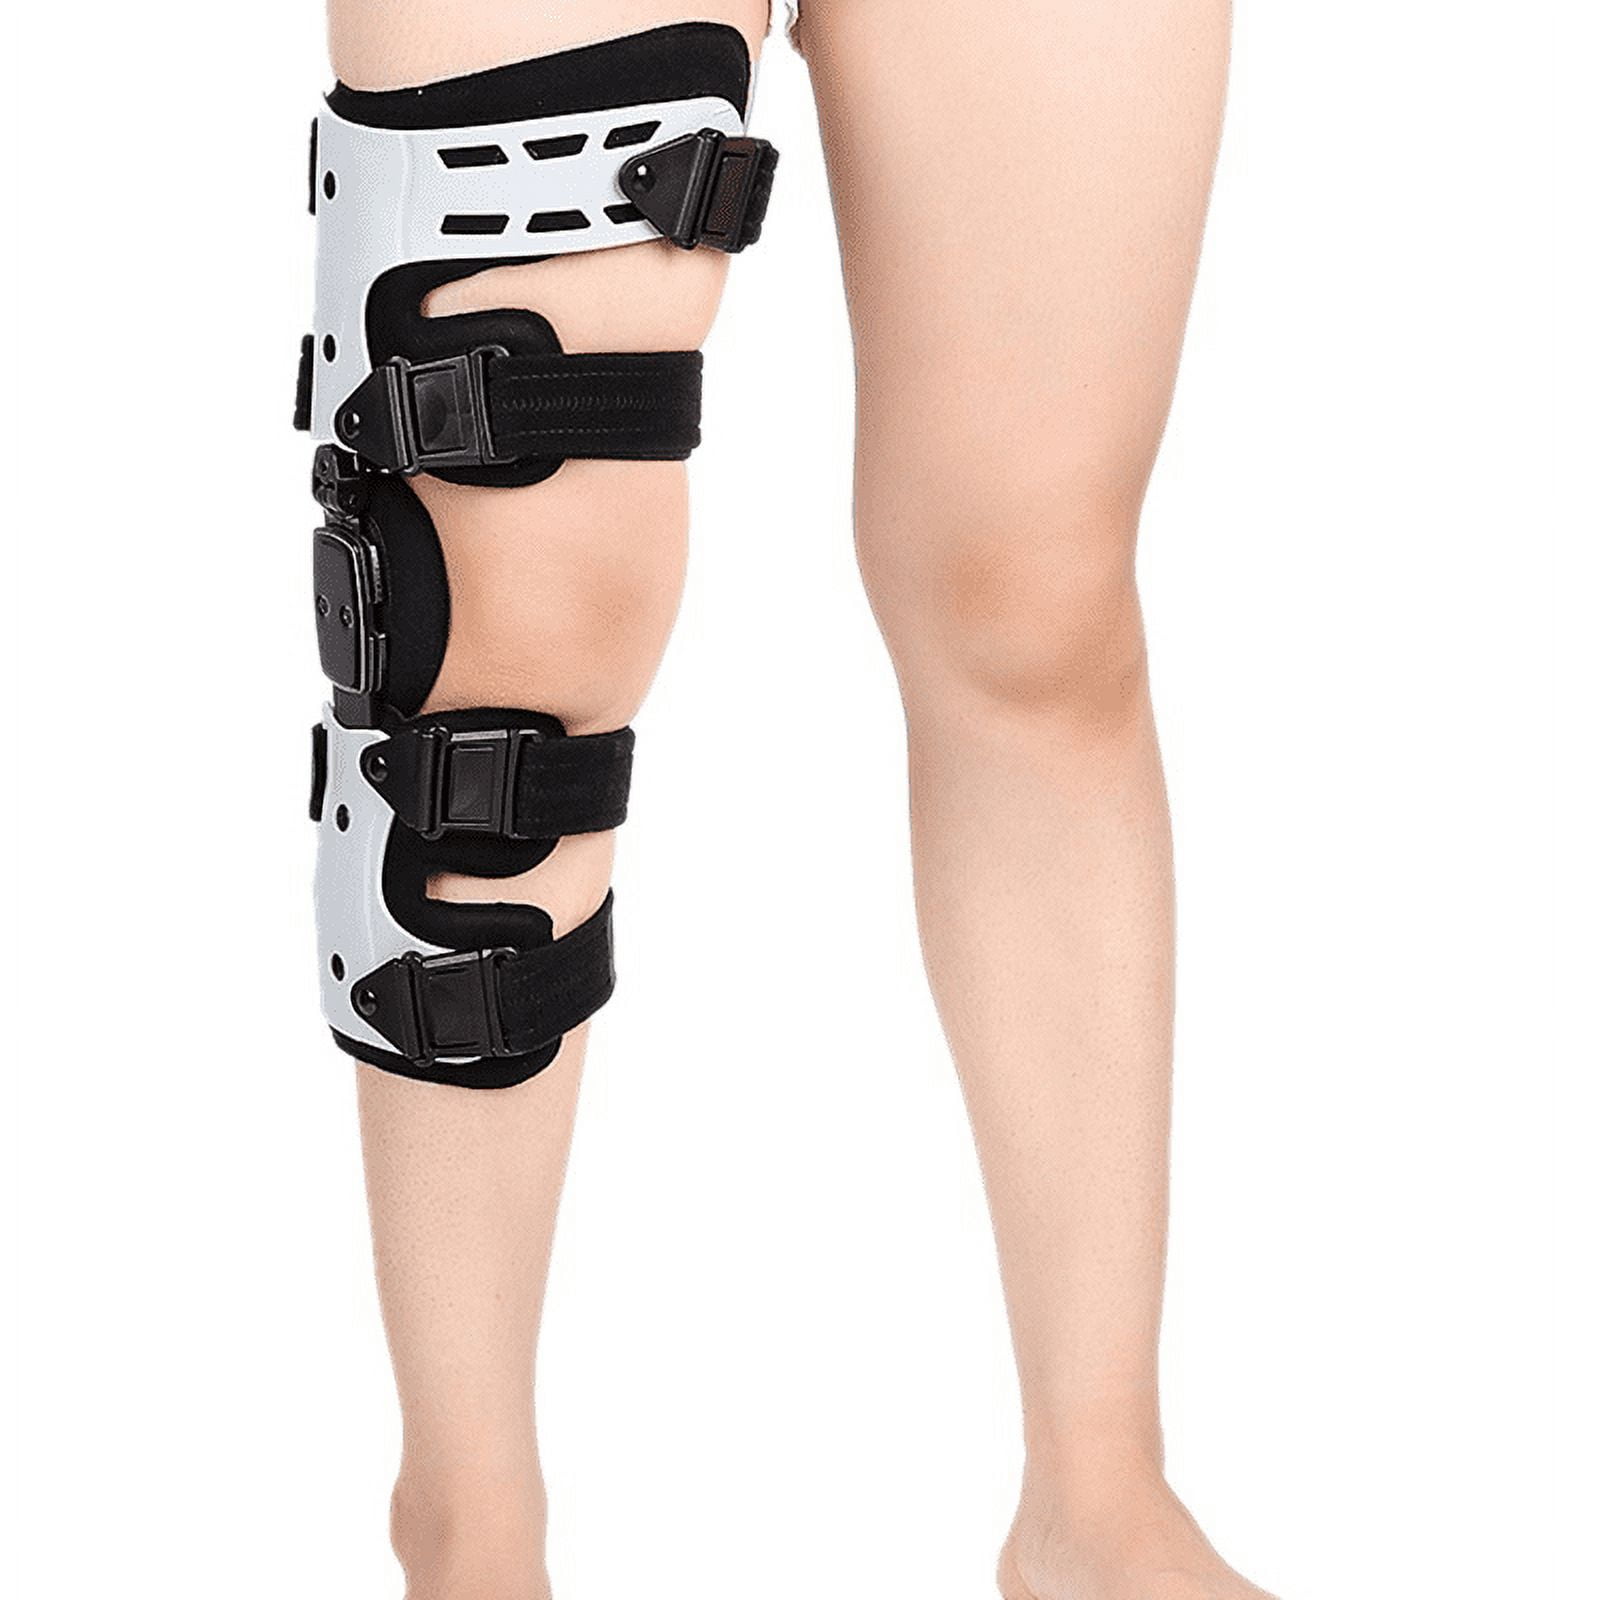 OA Knee Brace for Arthritis Ligament Medial Hinged Knee Support